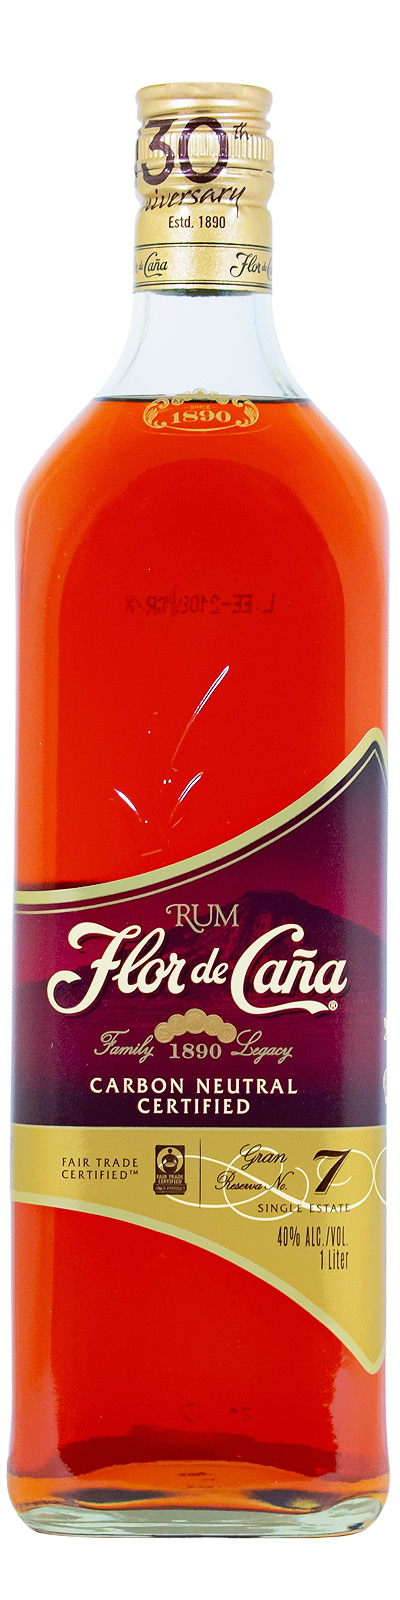 Flor de Cana 7 günstig (1L) brauner kaufen Jahre